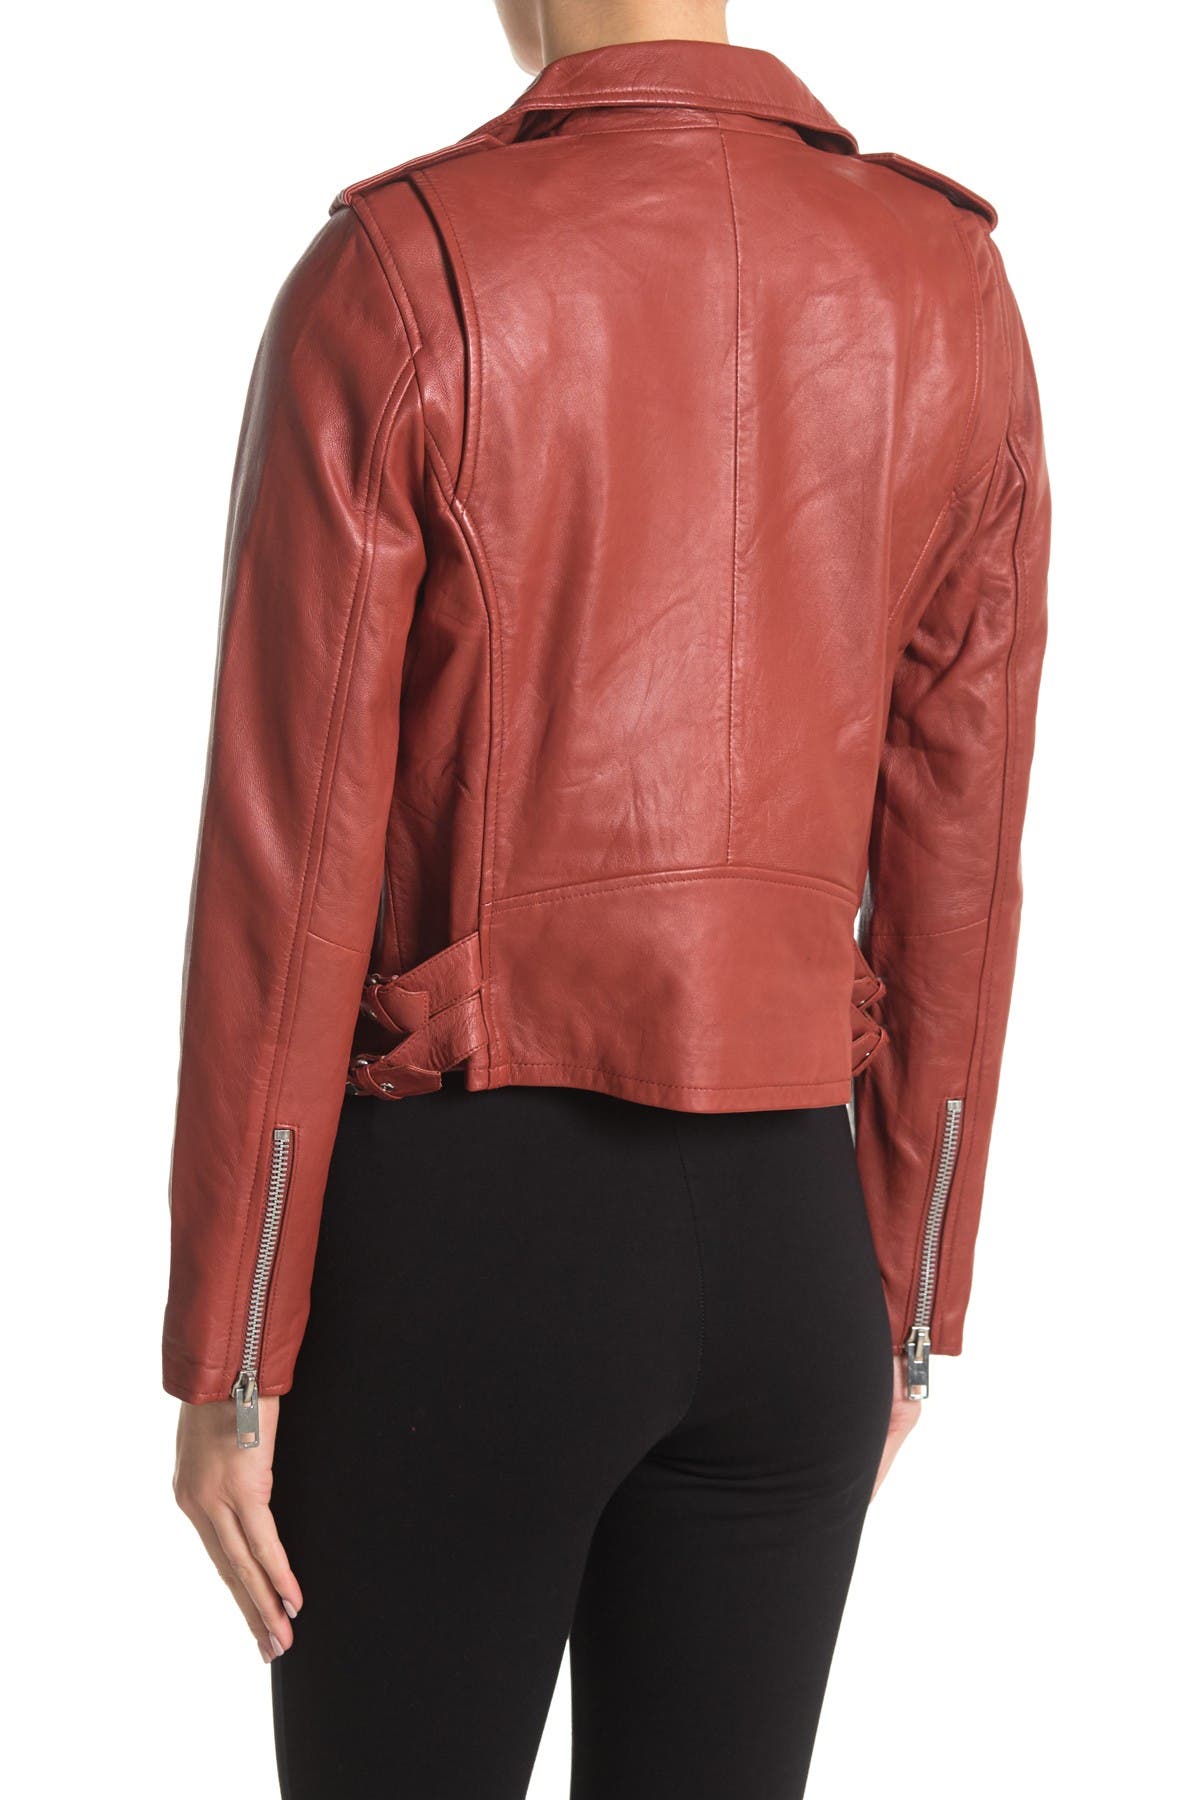 Walter Baker | Liz Leather Crop Moto Jacket | HauteLook